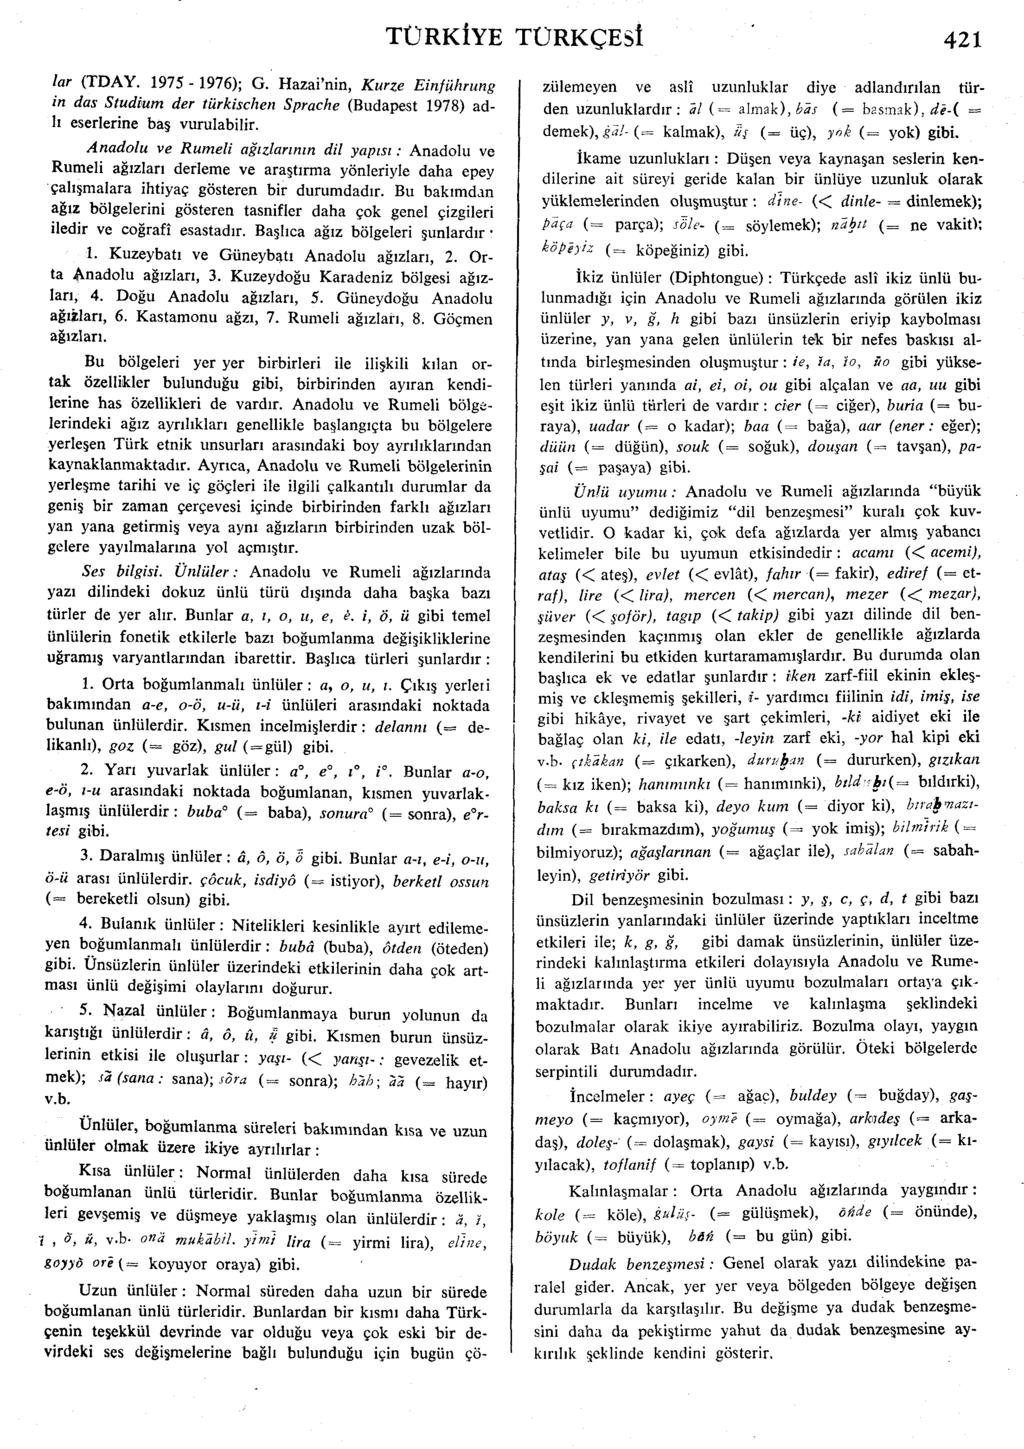 lar (TDAY. 1975-1976); G. Hazai'nin, Kurze Einfiihrung in das Studfum der tiirkischen Sprache (Budapest 1978) ad- 11 eserlerine bas vurulabilir.